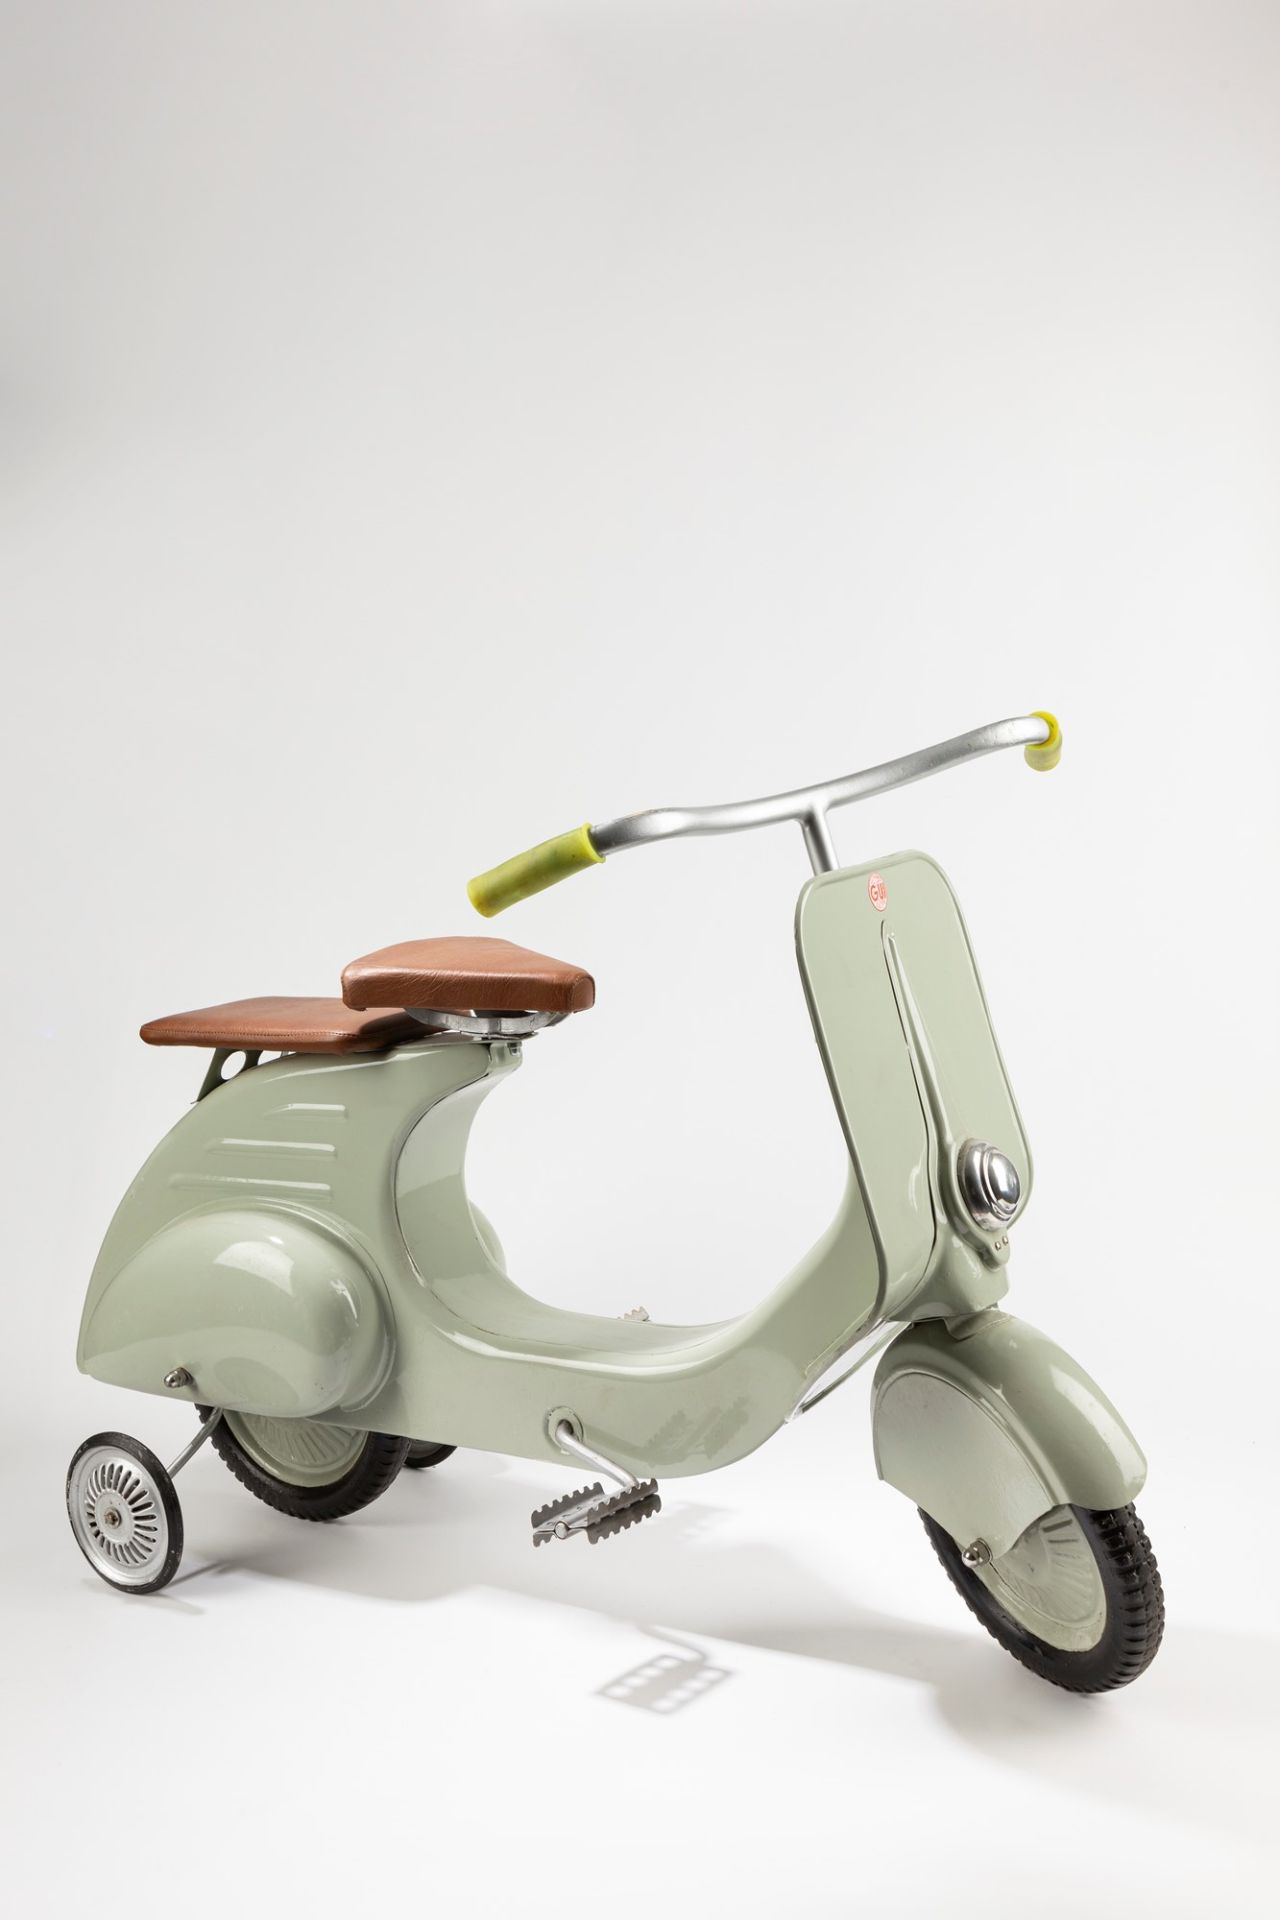 Pierre Gui - Vespa a pedali, 1950-1960 - Image 2 of 6